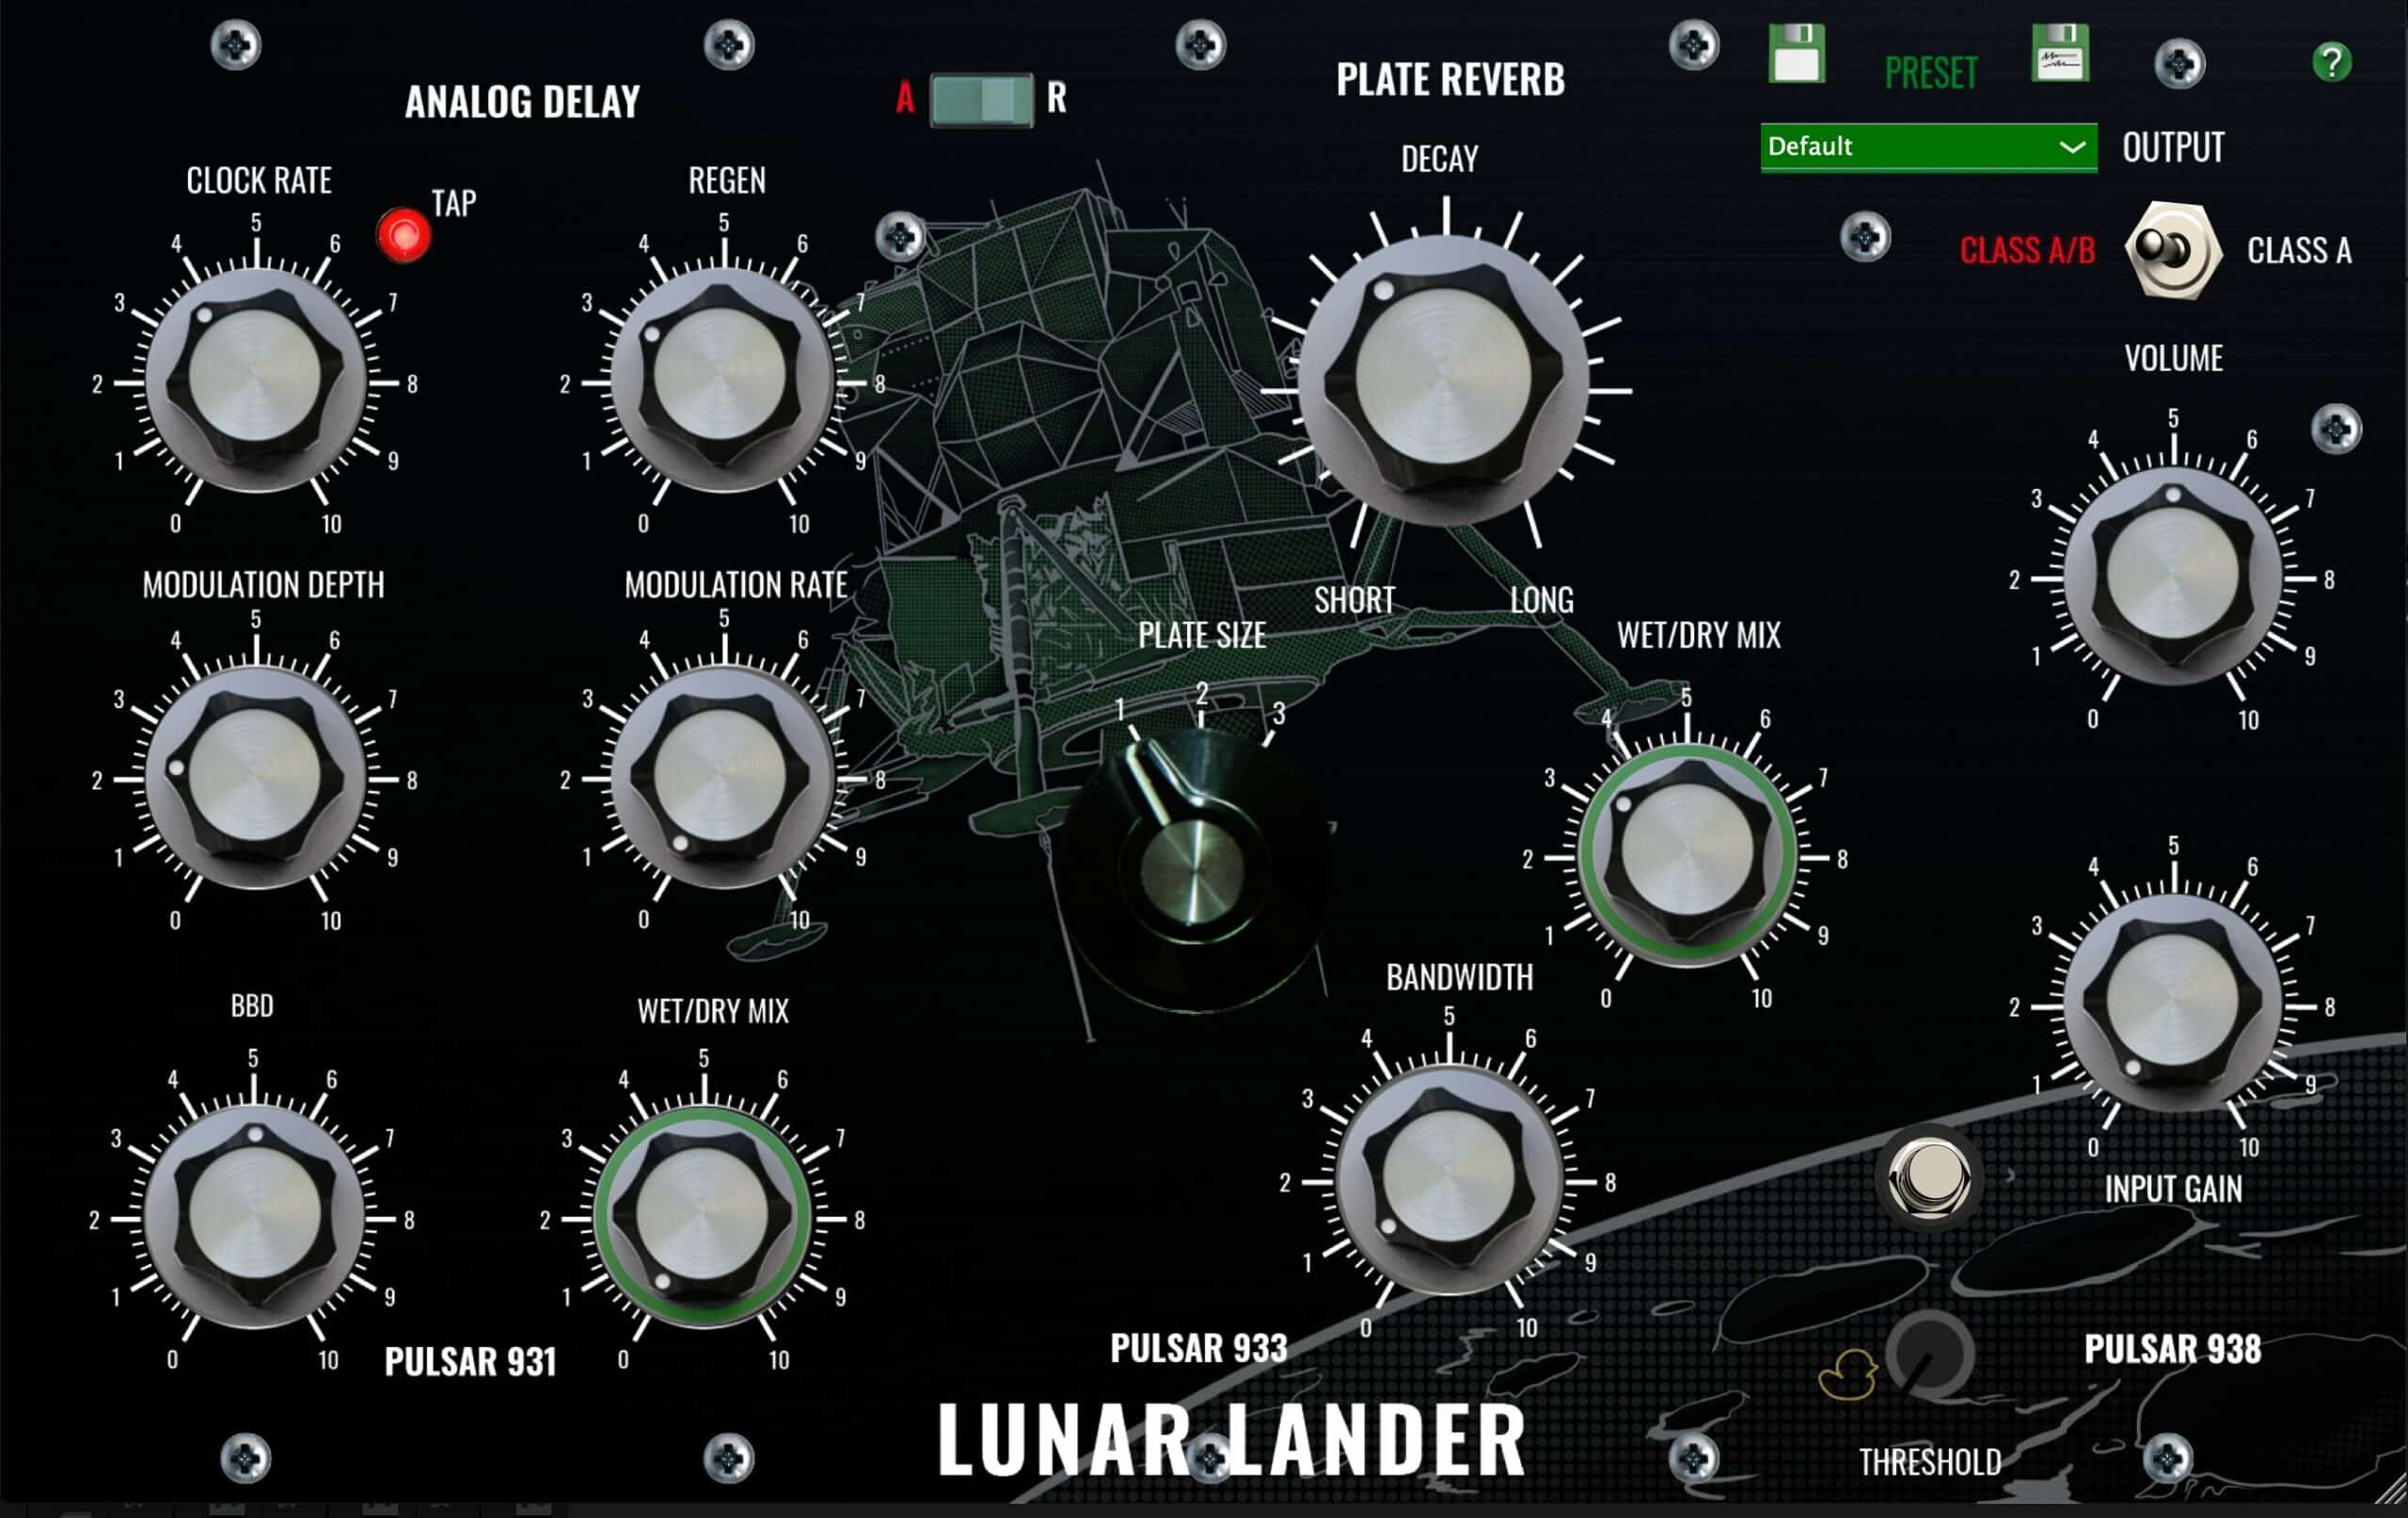 Lunar Lander Version 1.6 Released